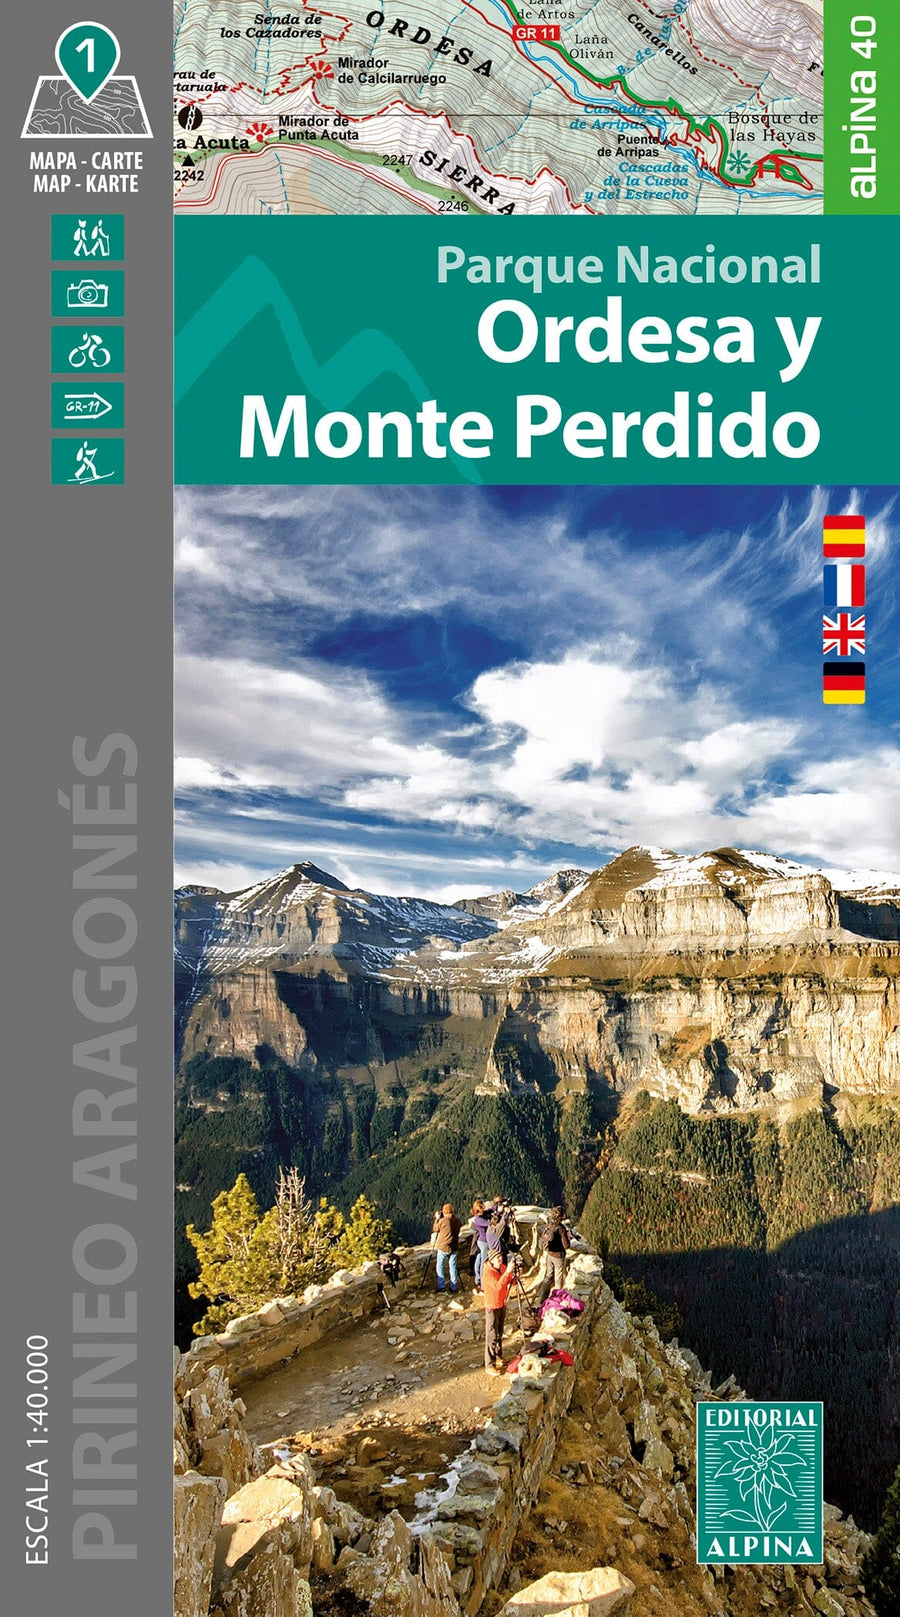 Carte de randonnée - Parc national d'Ordesa et Mont Perdu (Pyrénées aragonaises) | Alpina carte pliée Editorial Alpina 